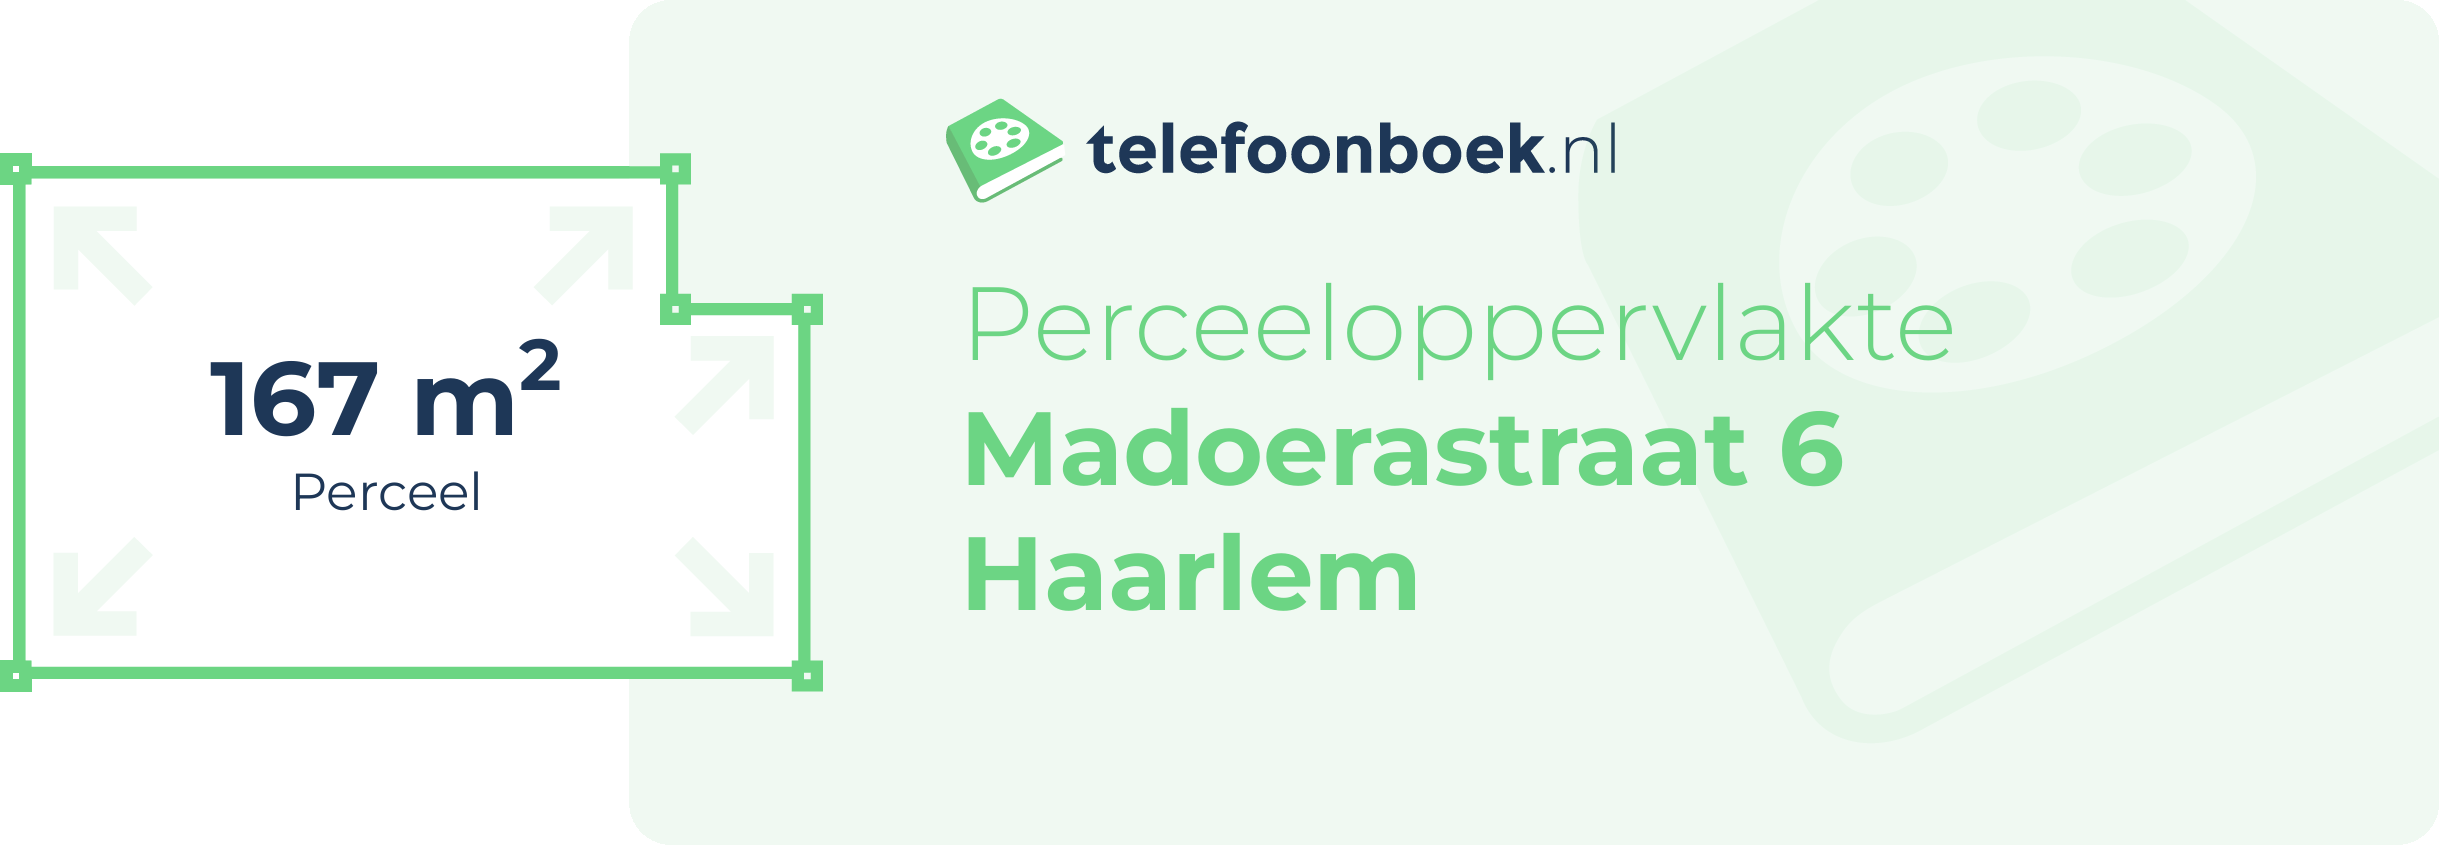 Perceeloppervlakte Madoerastraat 6 Haarlem